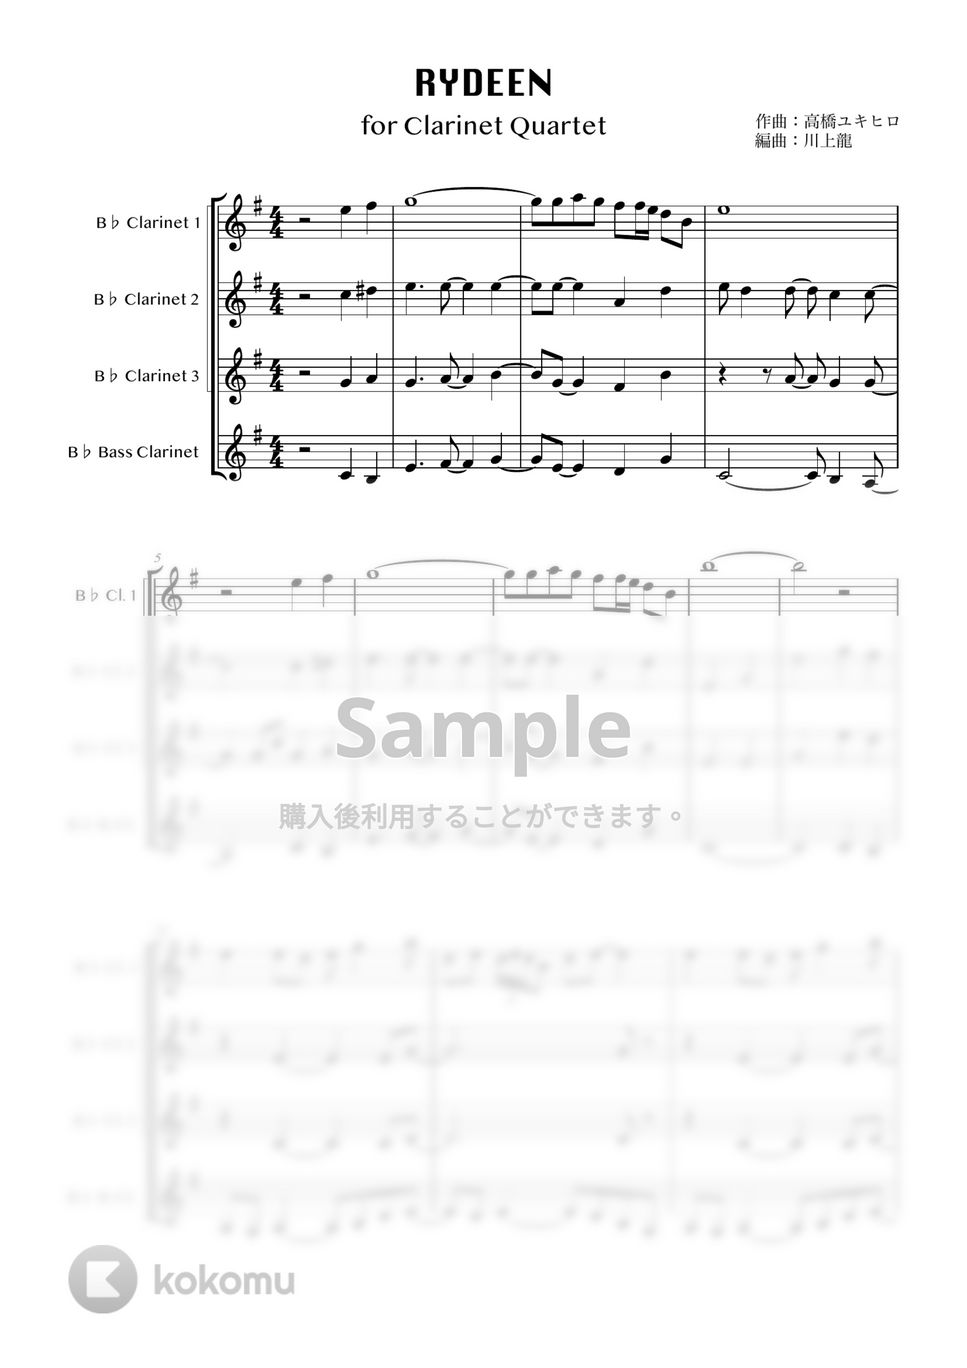 高橋ユキヒロ - RYDEEN (クラリネット四重奏) by 川上龍